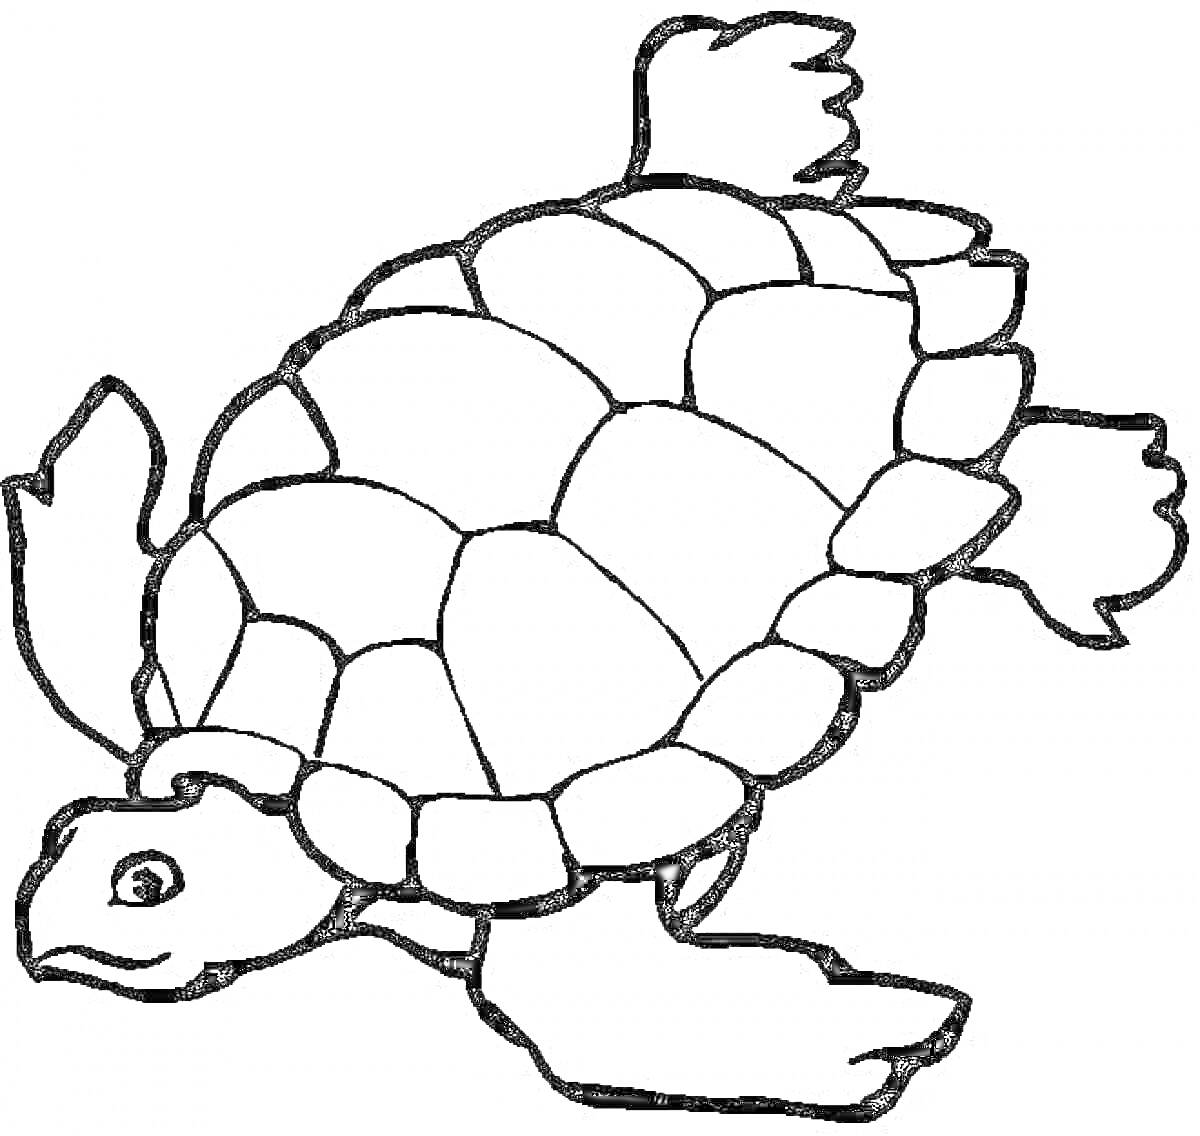 Черепаха с панцирем и плавниками